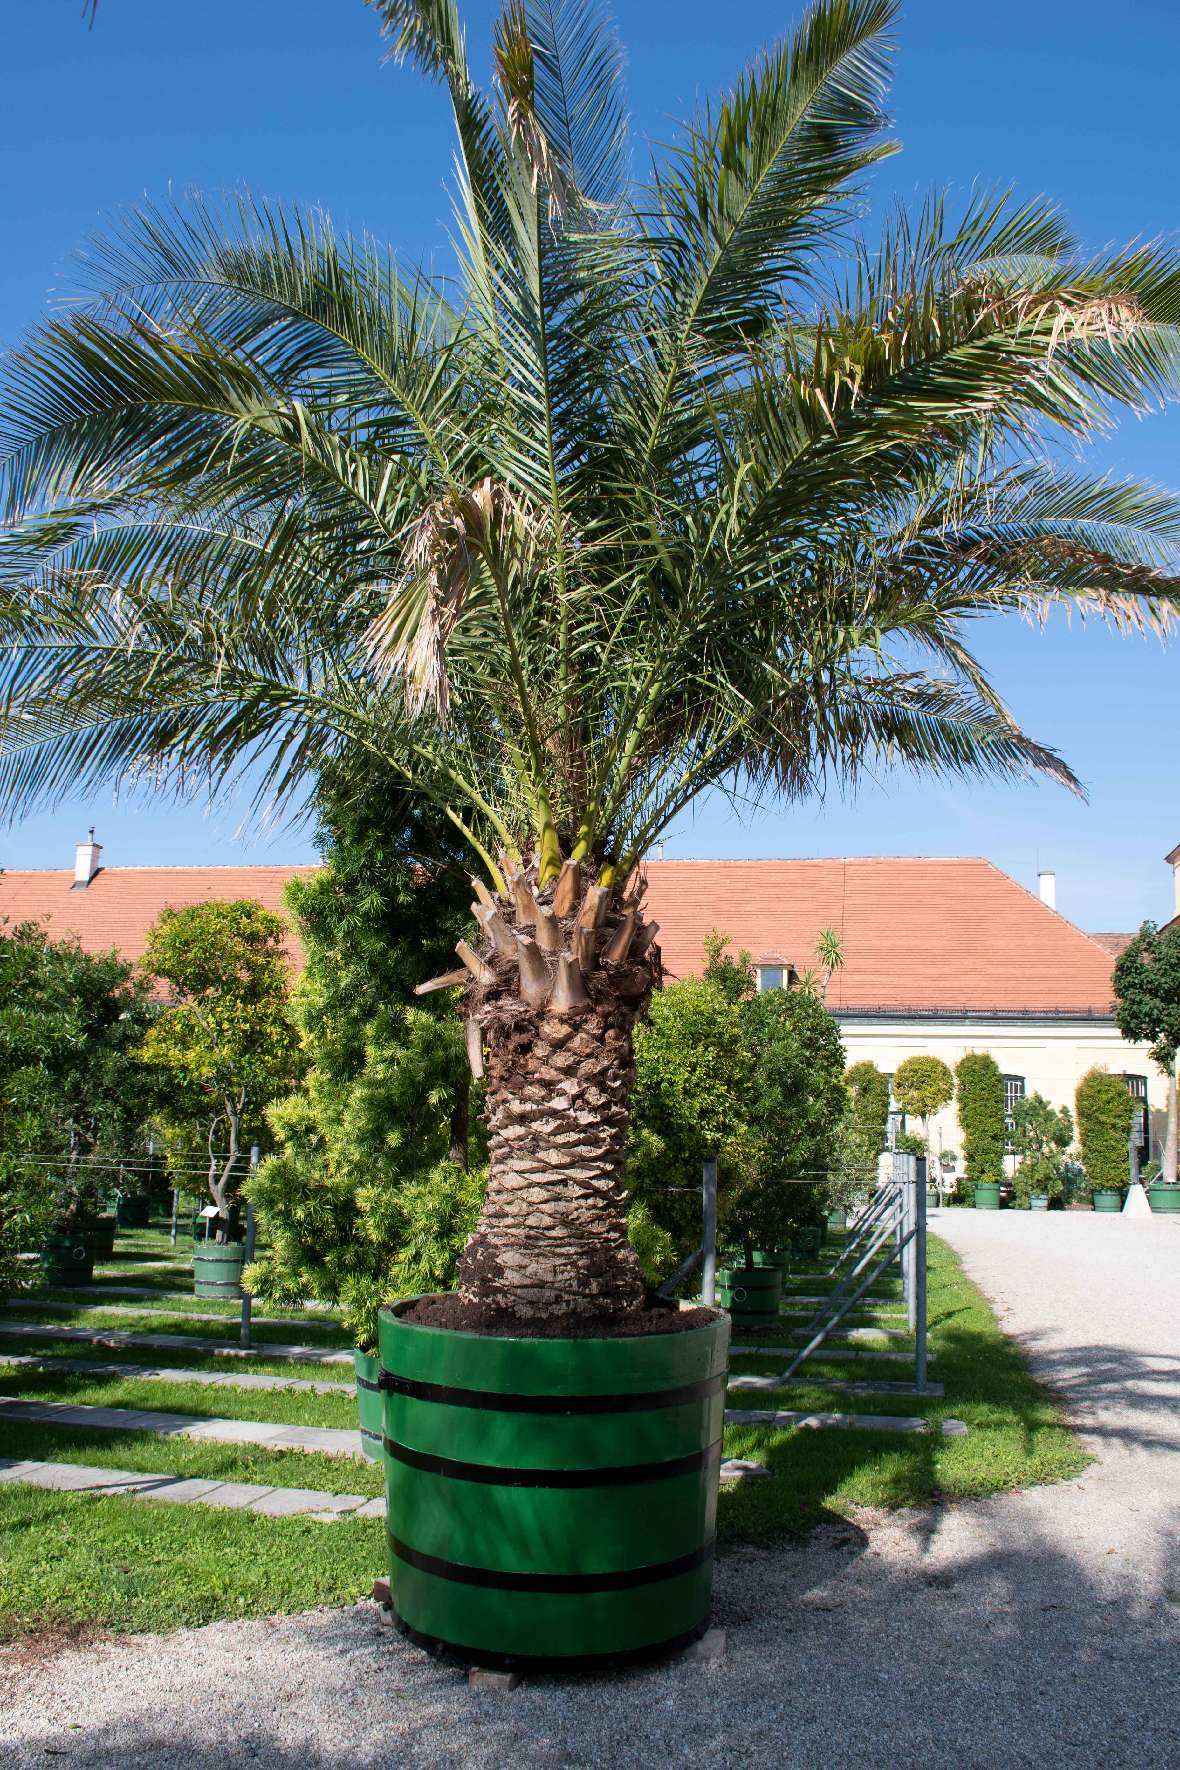 Gesamtaufnahme der Palme im neuen Kübel im Orangeriegarten